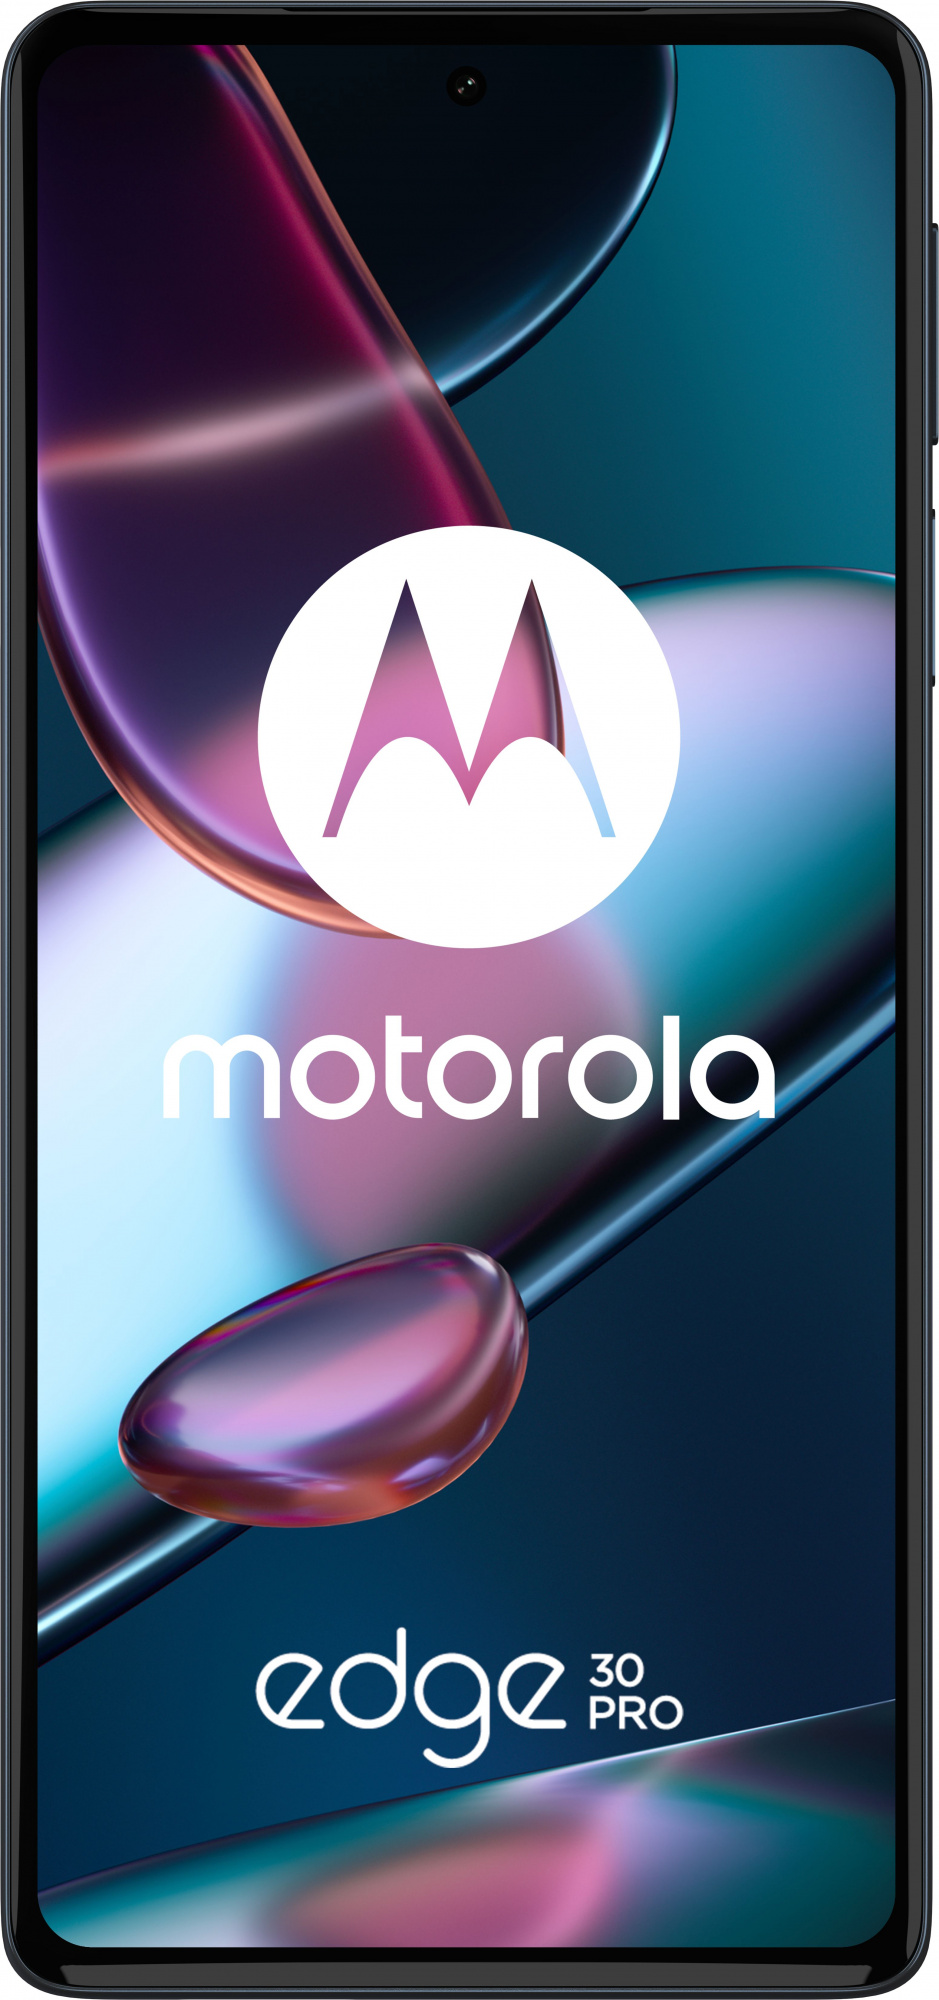 Смартфон Motorola XT2201-1 Edge 30 pro 256Gb синий (PASS0031RU)